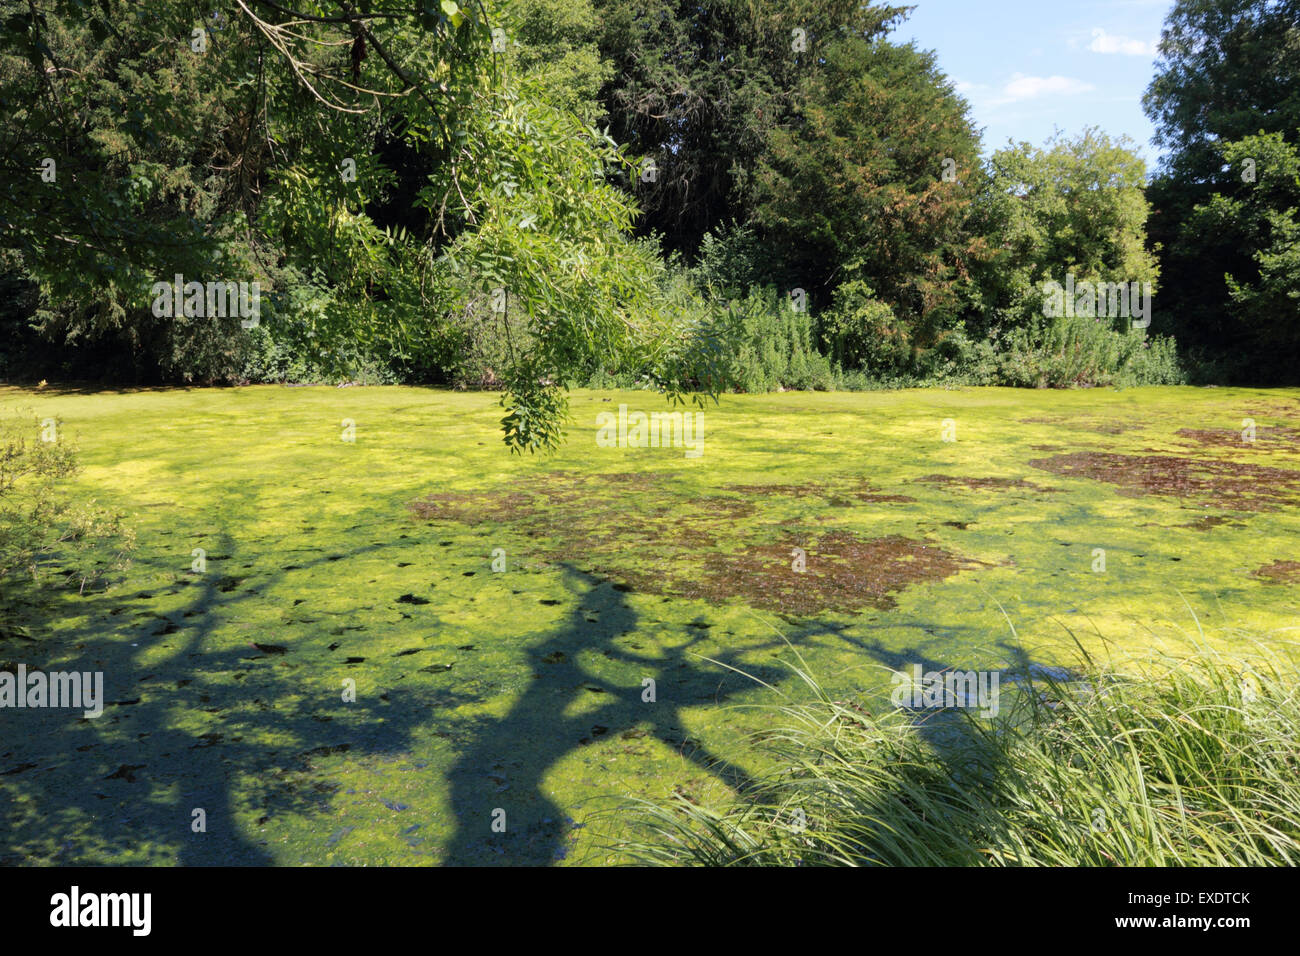 Les mauvaises herbes étang très envahissante appelée crassula aussi nocifs pour la santé présents dans le silence et la piscine Étang Sherbourne UK Banque D'Images